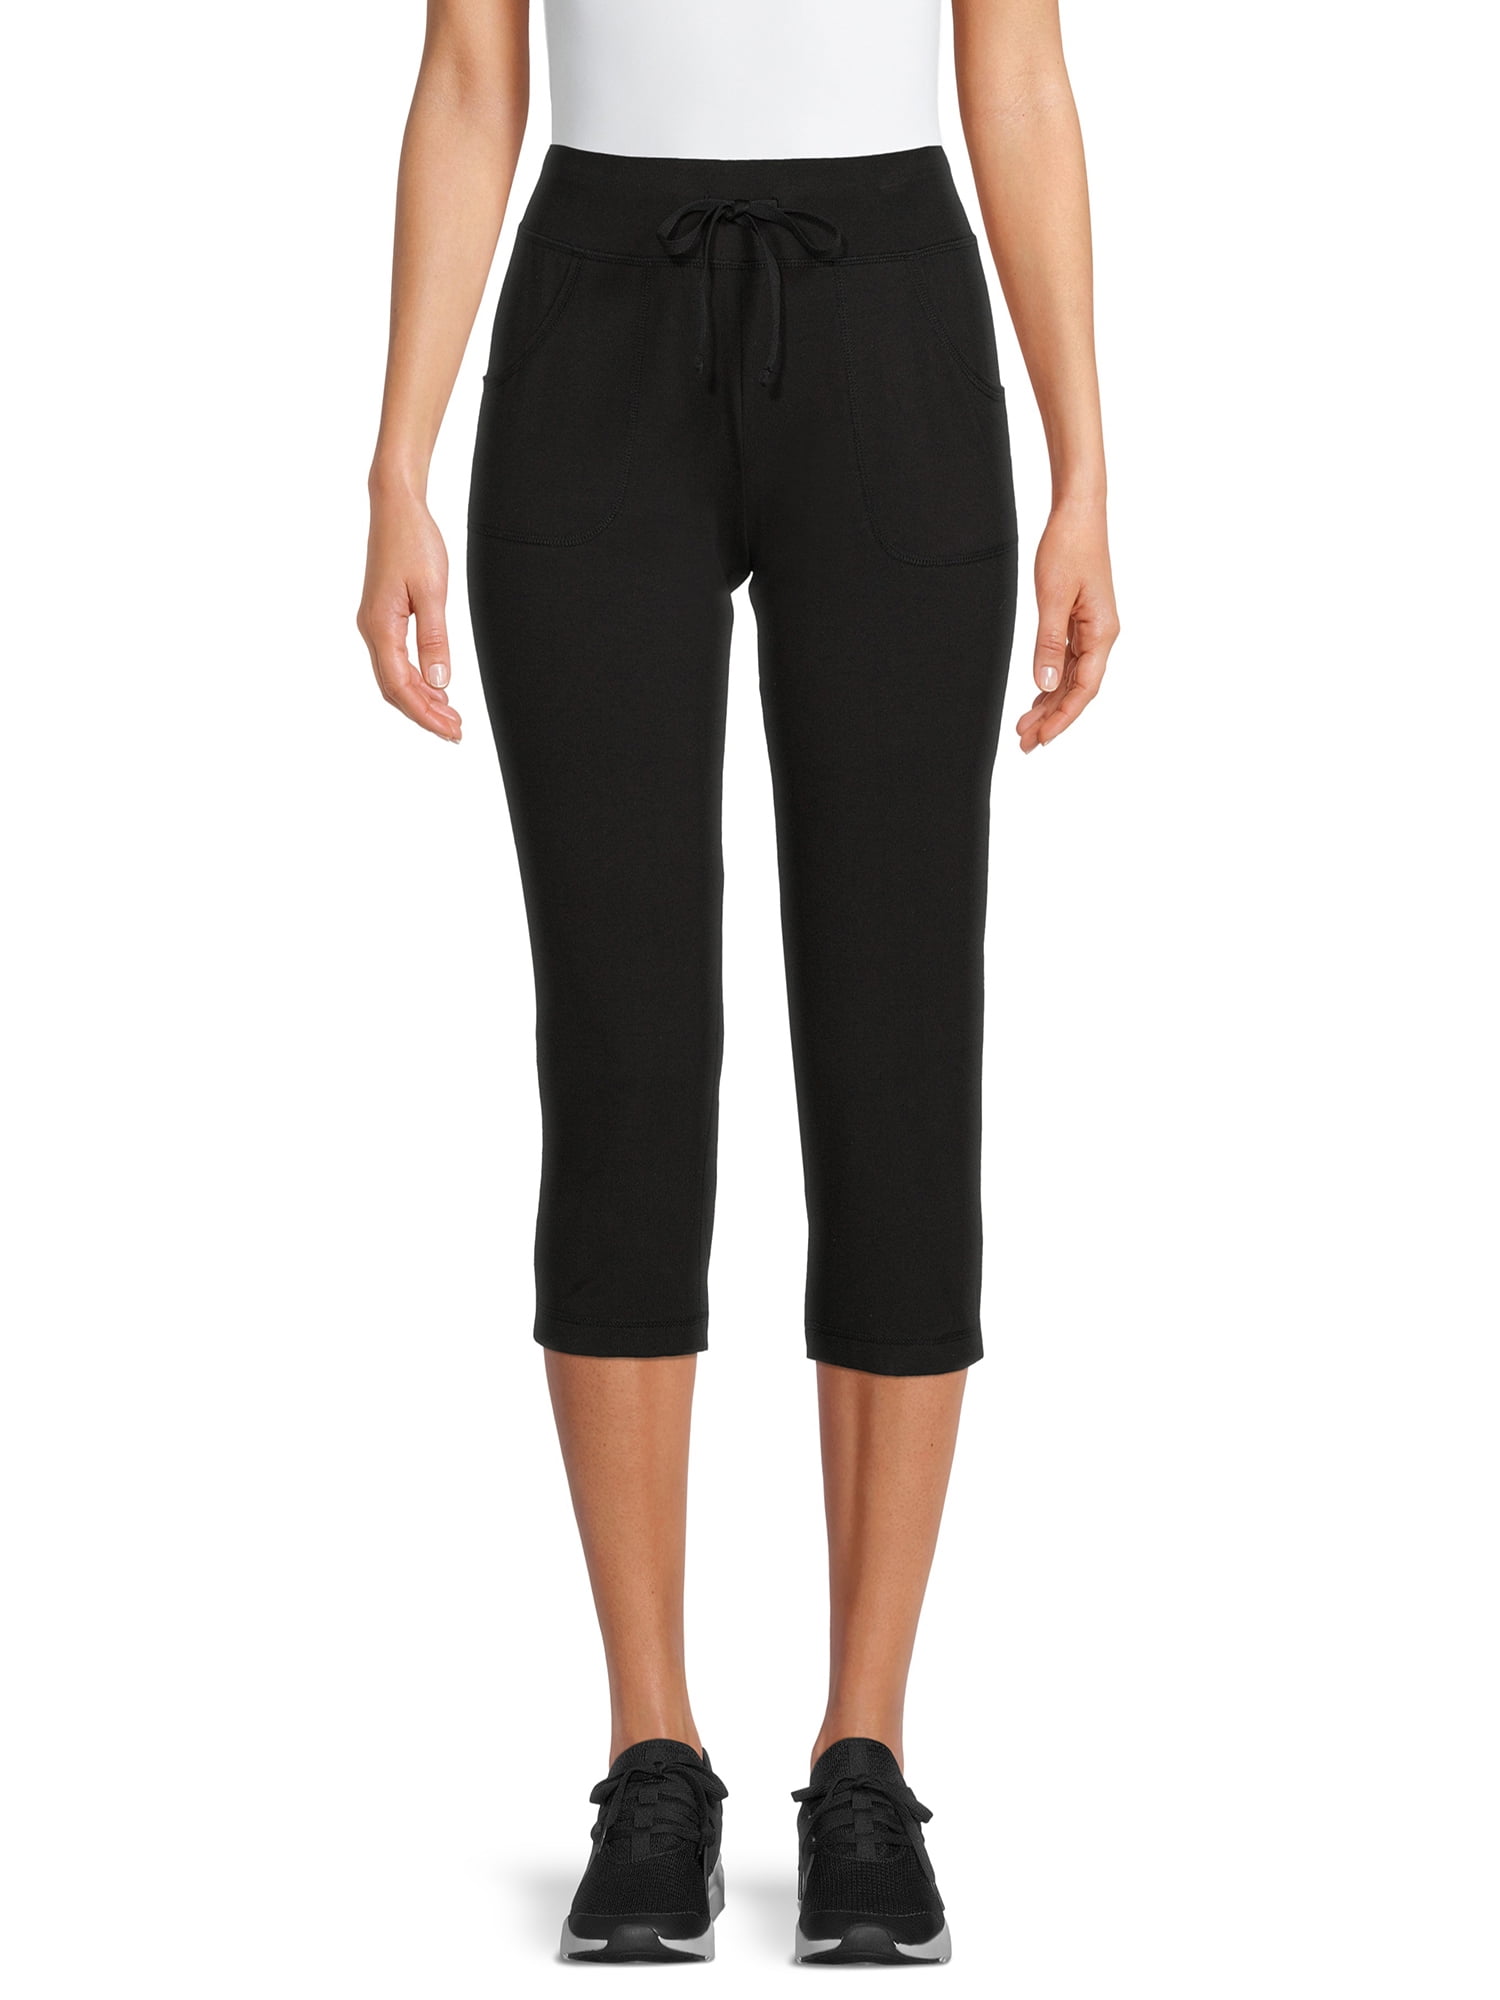 Nike Womens Sportswear Polar Fleece Pants Black/White/Brown CJ4934